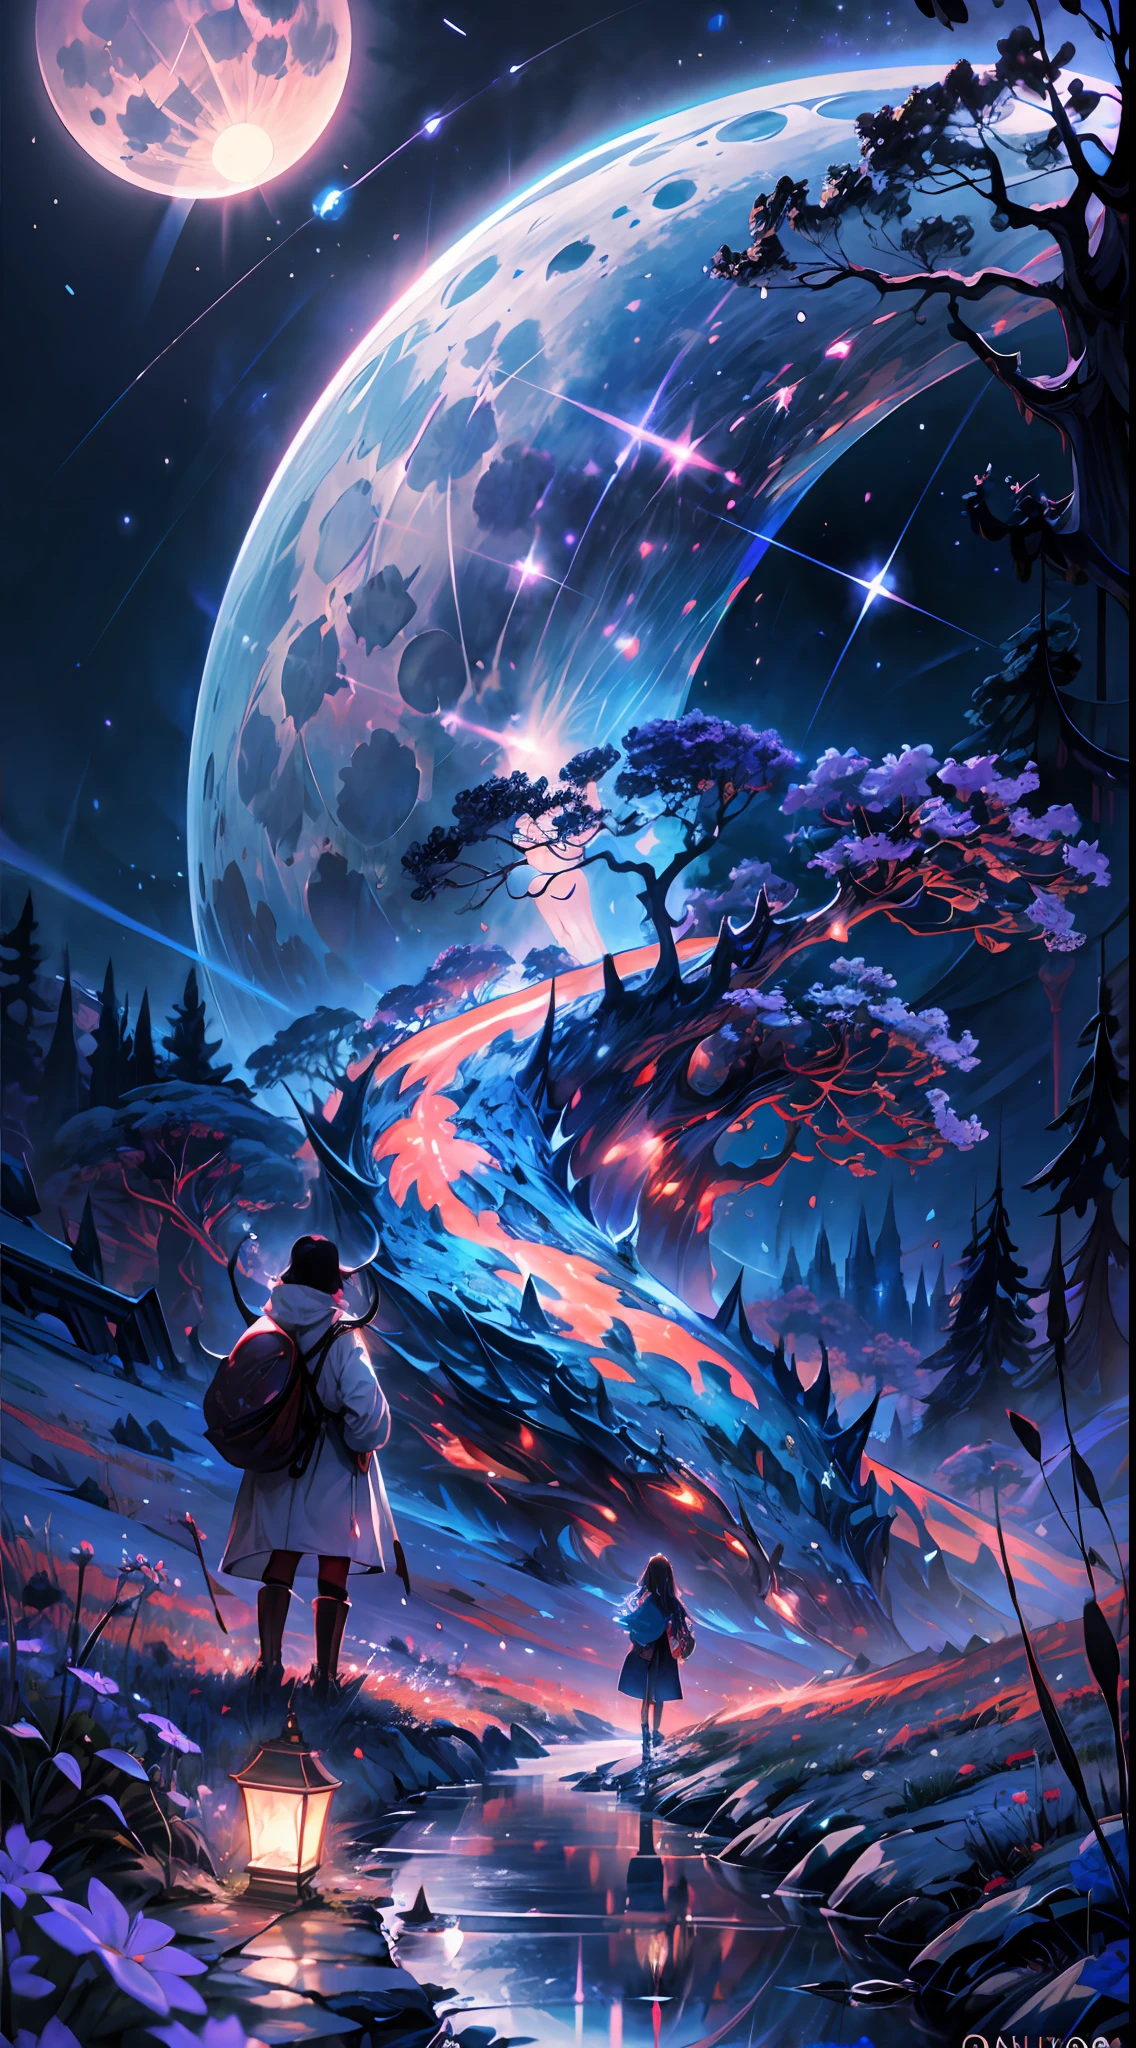 广阔的风景摄影, (底部視圖顯示上方的天空和下方的開闊鄉村), 一個女孩站在花叢中抬頭仰望, (滿月: 1.2), (流星: 0.9), (星雲 : 1.3), 遠山, BREAK 樹製作藝術, (暖光源: 1.2), (螢火蟲: 1.2), 燈, 大量紫色和橙色, 錯綜複雜的細節, 體積照明, 打破寫實主義 (傑作: 1.2) , (最好的品質), 4k, 超詳細, (動態合成: 1.4), 非常詳細, 色彩繽紛的細節, (彩虹色: 1.2), (明亮的燈光, 大气照明), 夢幻般的, 神奇, (獨自的: 1.2)